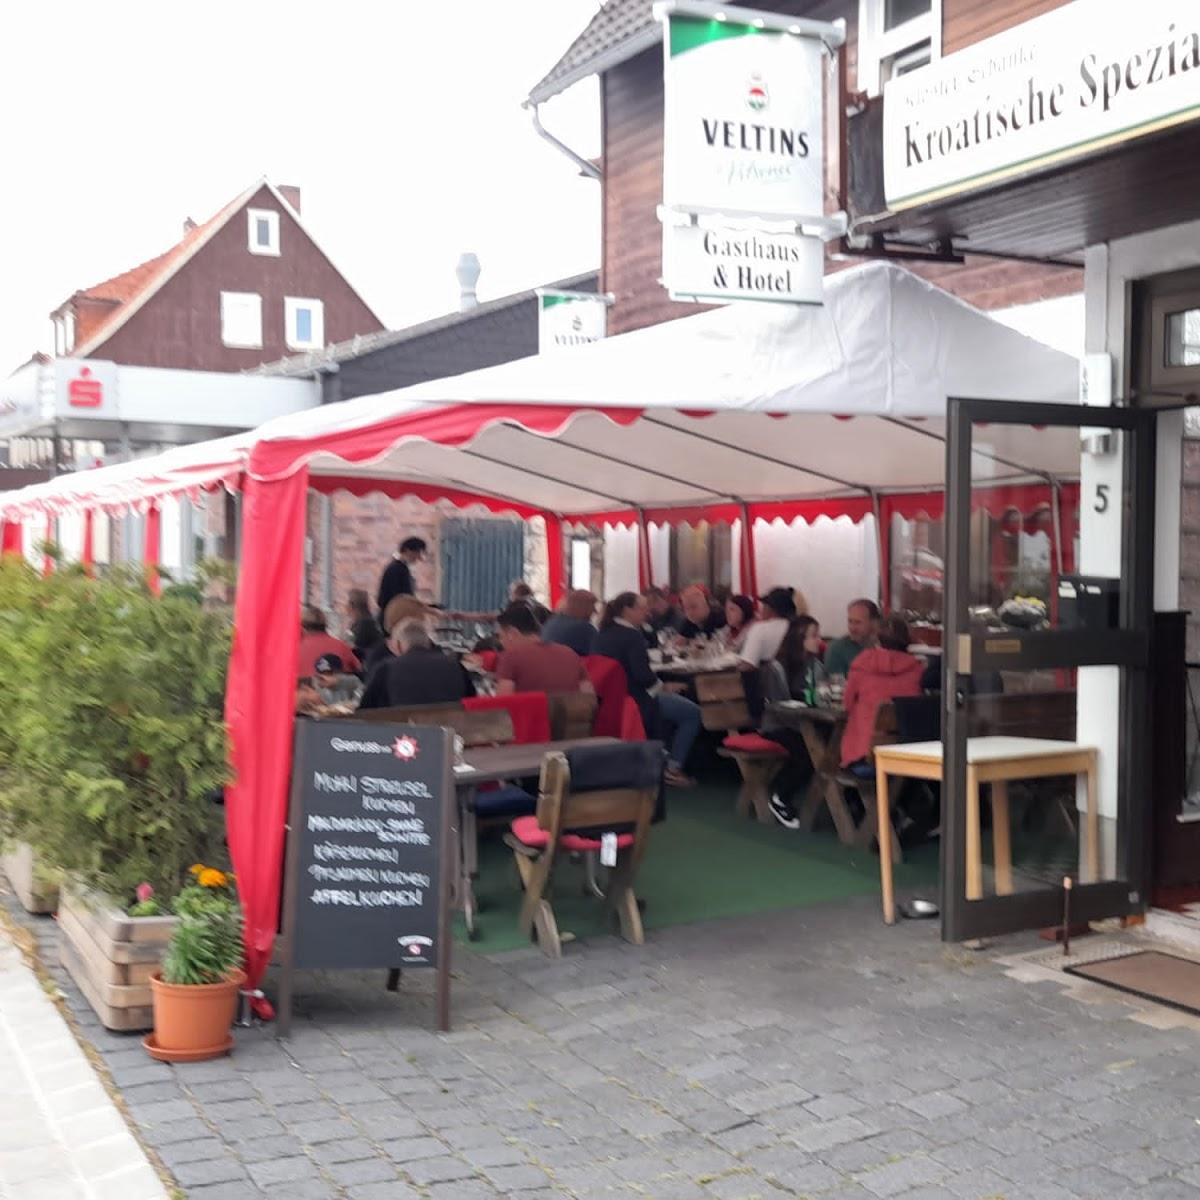 Restaurant "Klosterschänke" in Walkenried